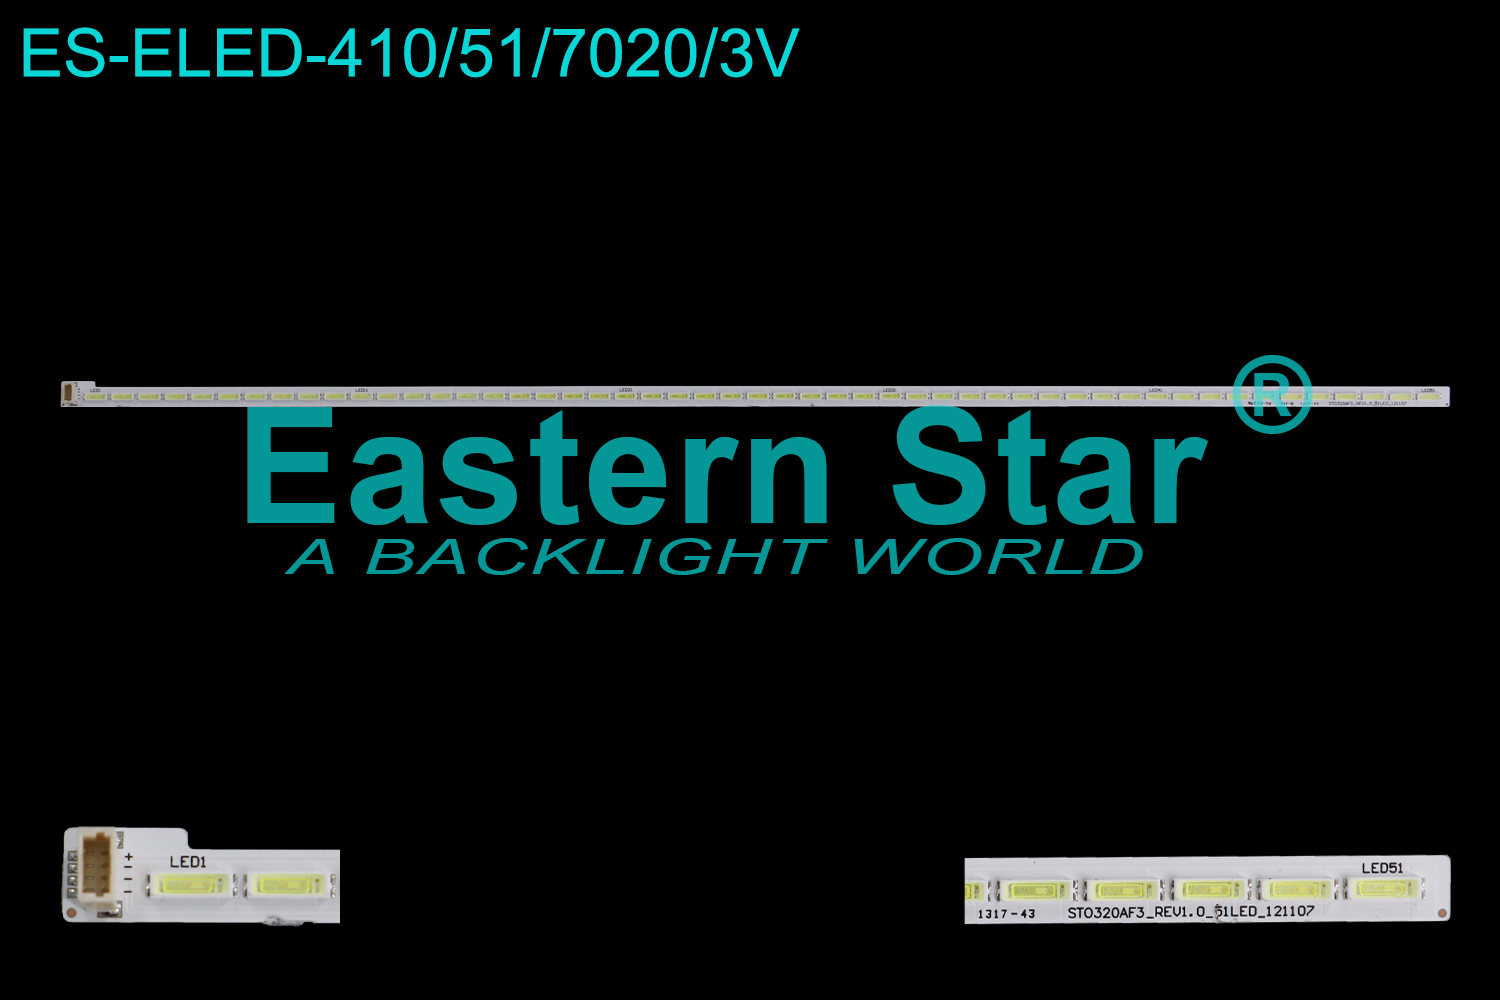 ES-ELED-410 ELED/EDGE TV backlight use for 32'' VIZIO STO320AF3_REV1.0_51LED_121107  LED STRIPS(/)